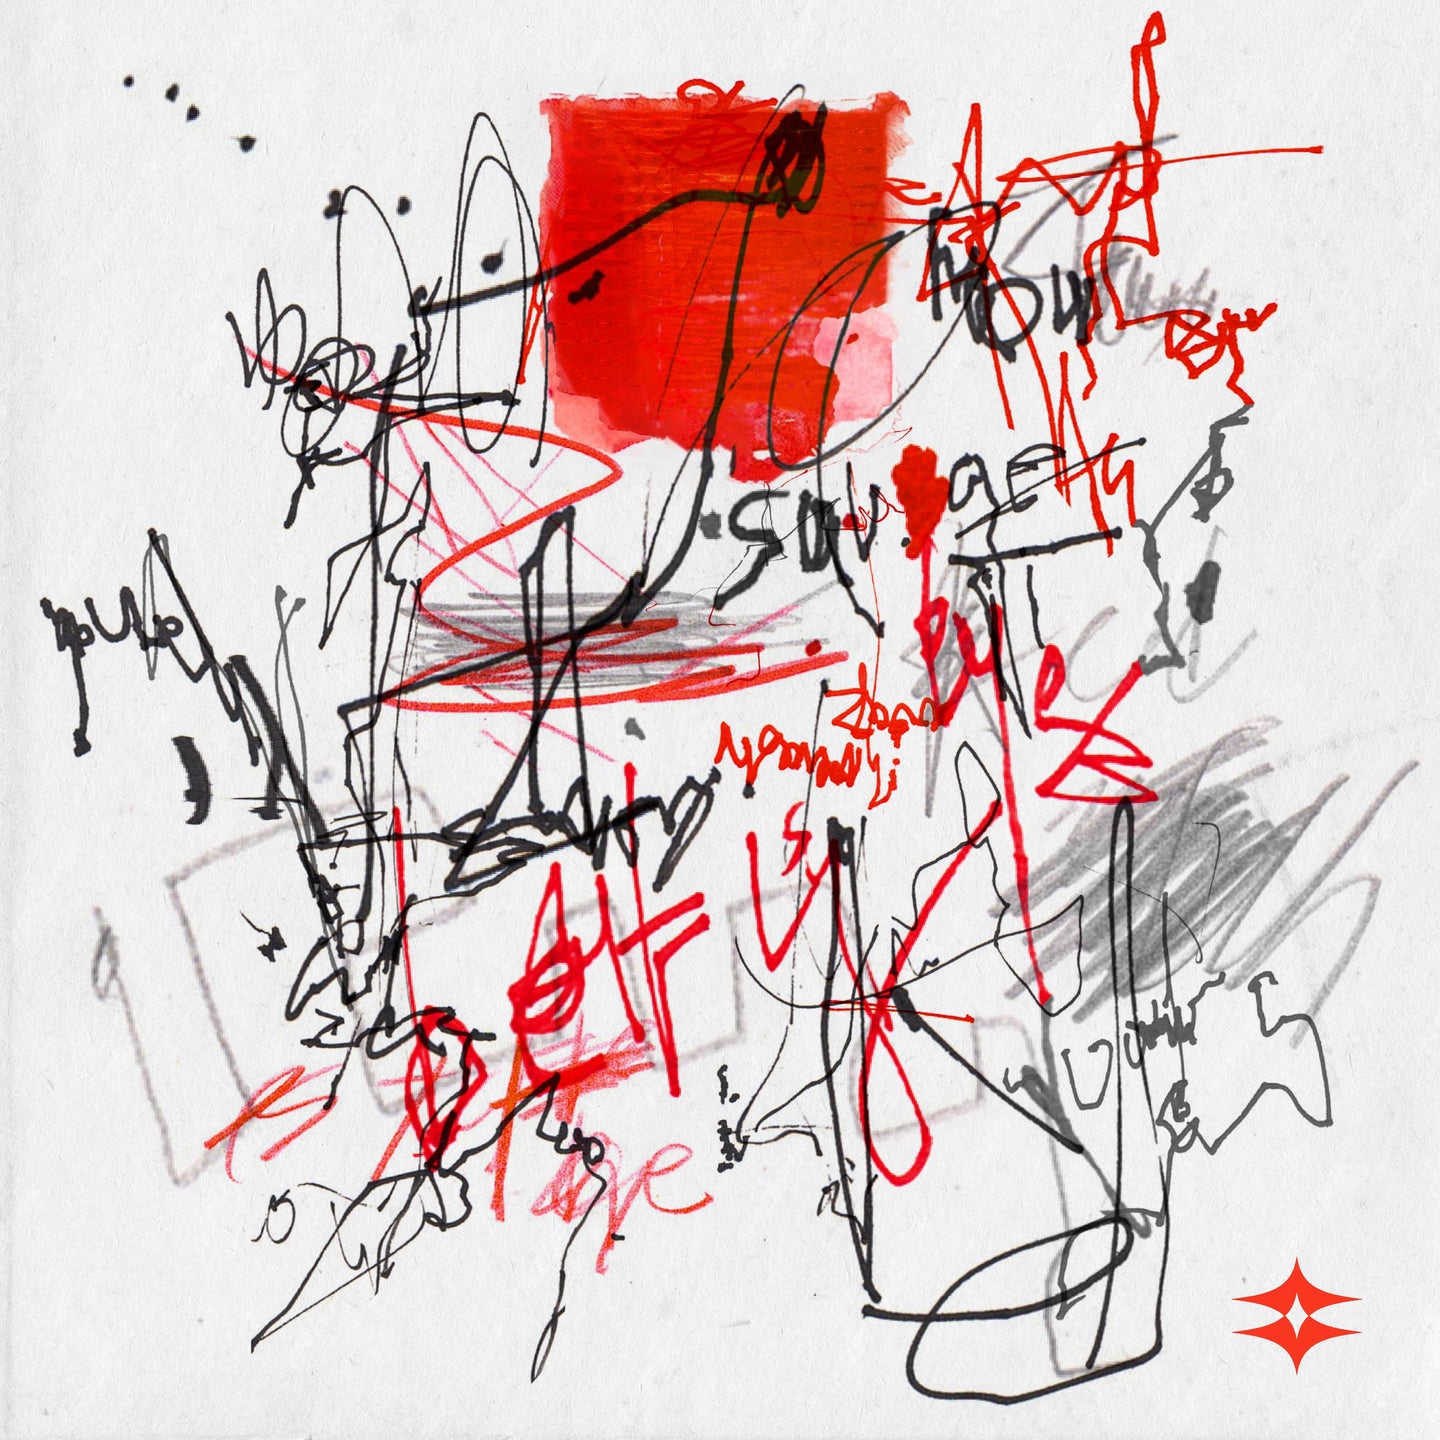 DPR CREAM Album – psyche: red (2 CD)